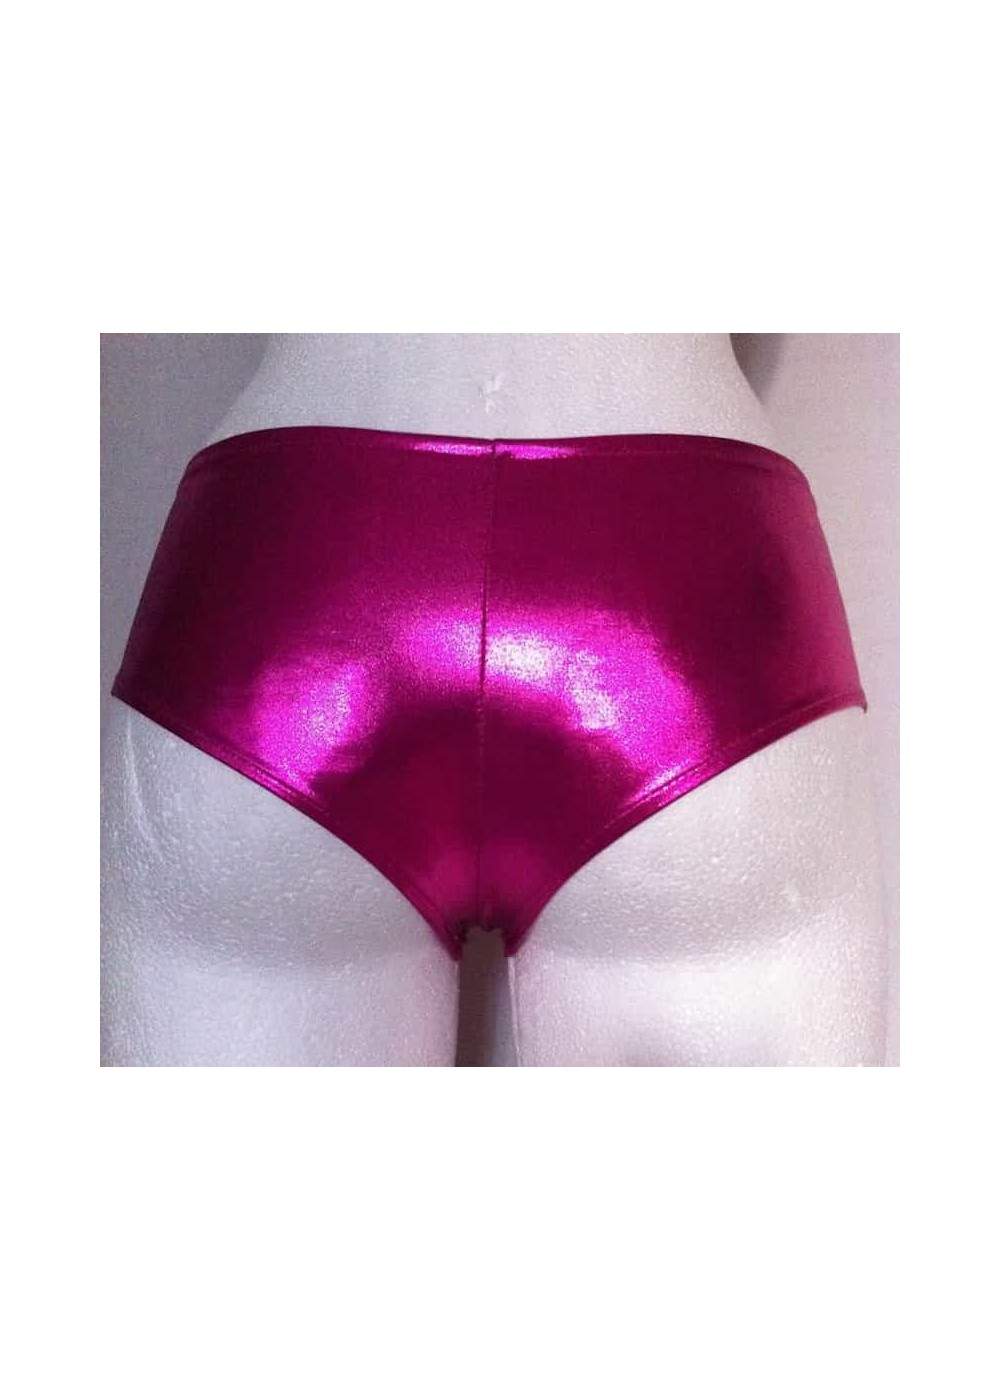 Pantalones calientes de cuero óptico rosa metalizado Tallas 34 - 42